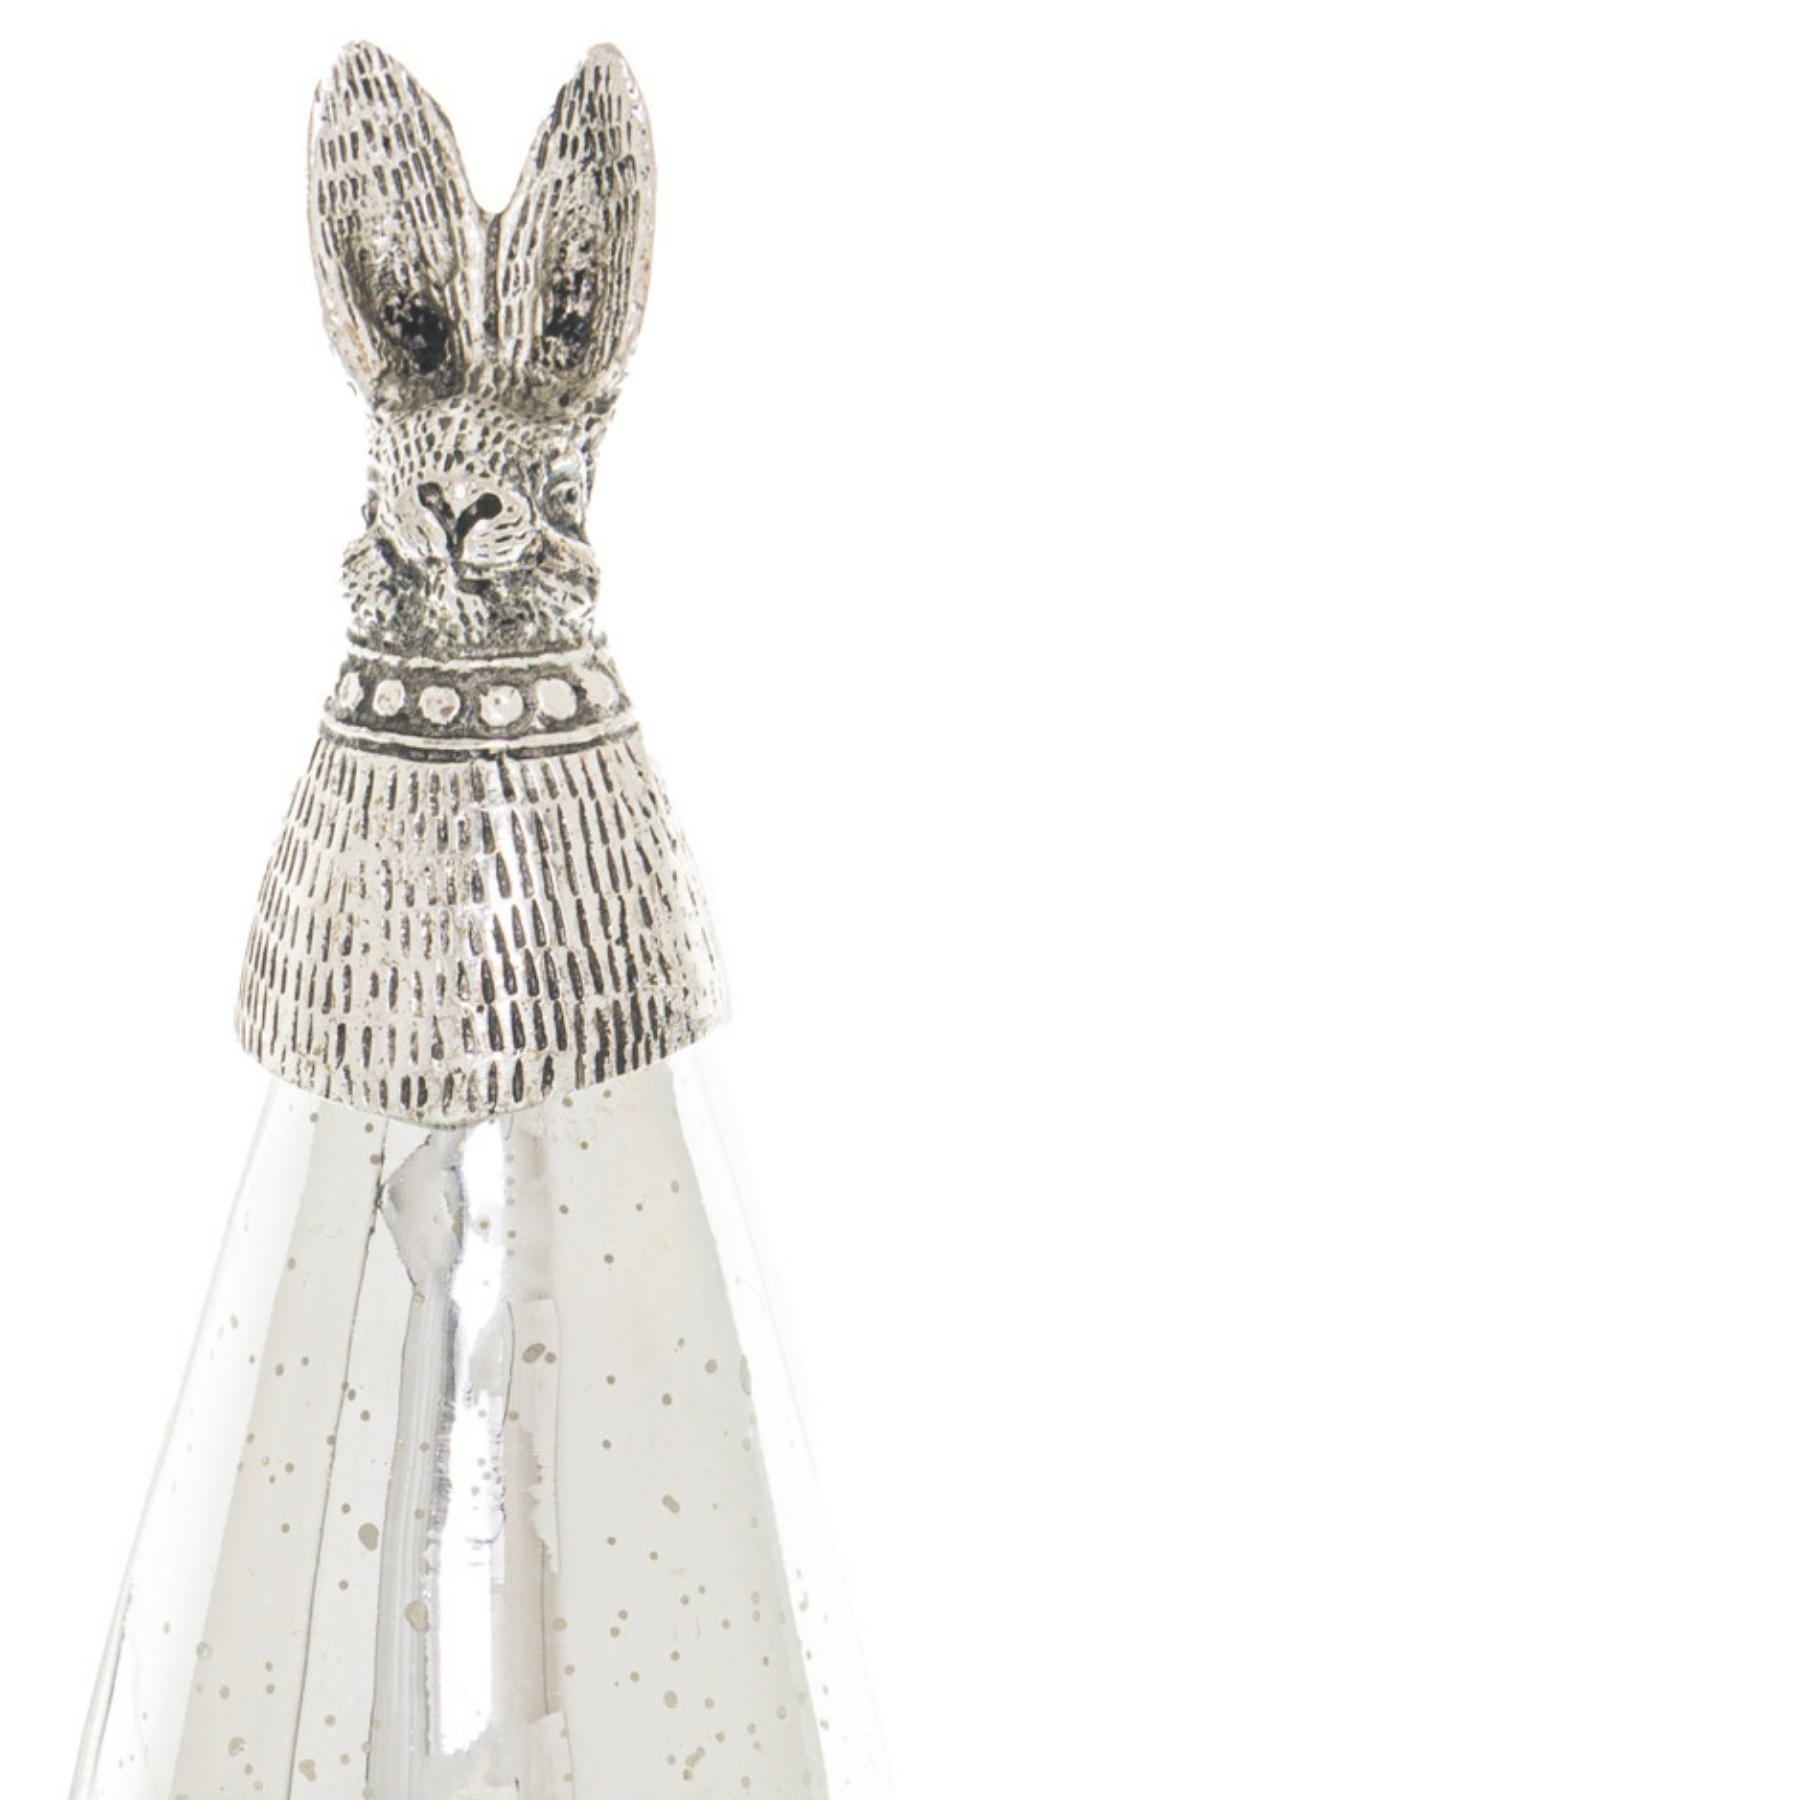 Silver Bunny Ornament - Image 2